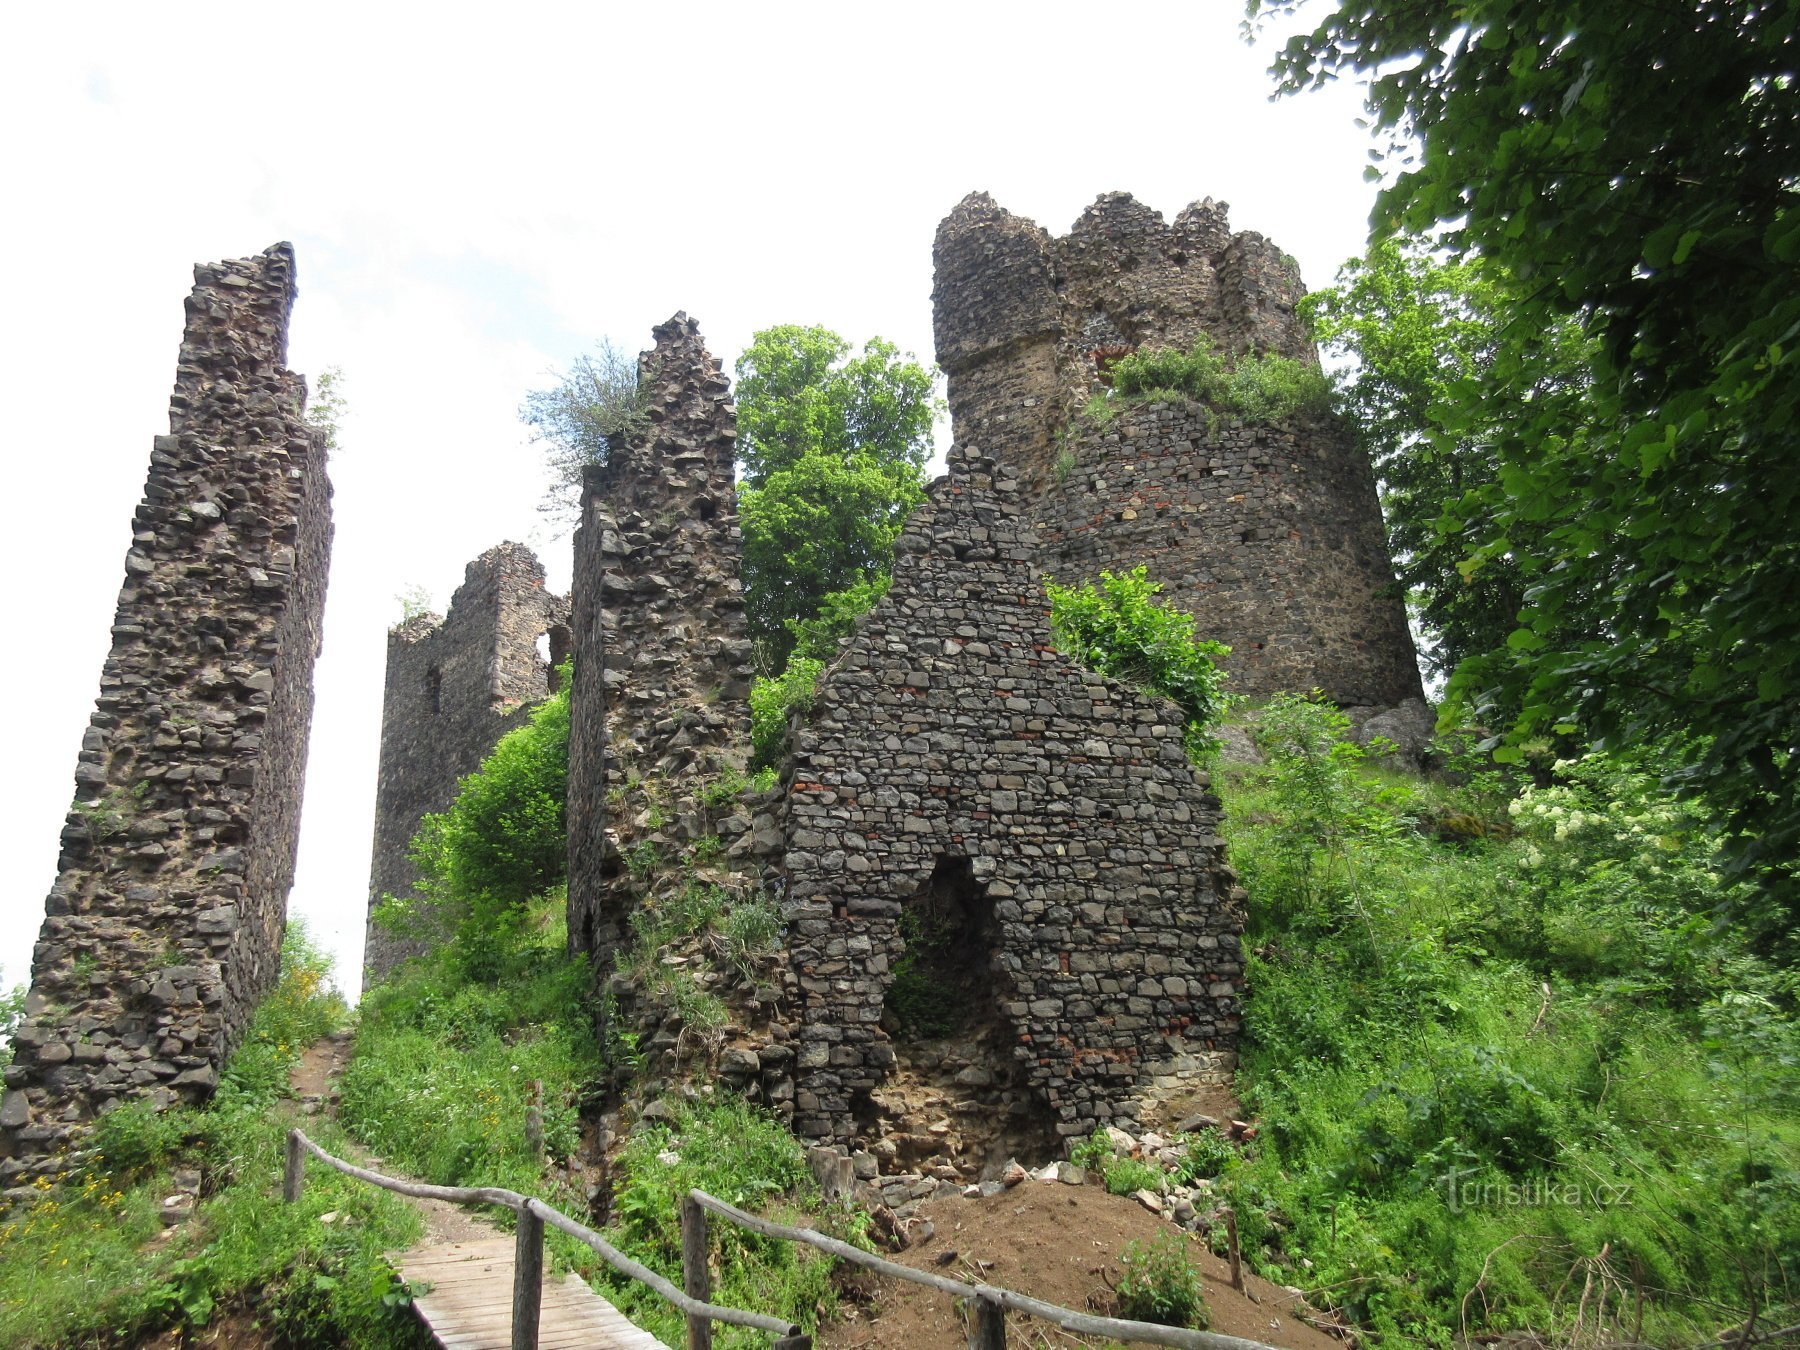 Primeira vista da ruína com a torre redonda